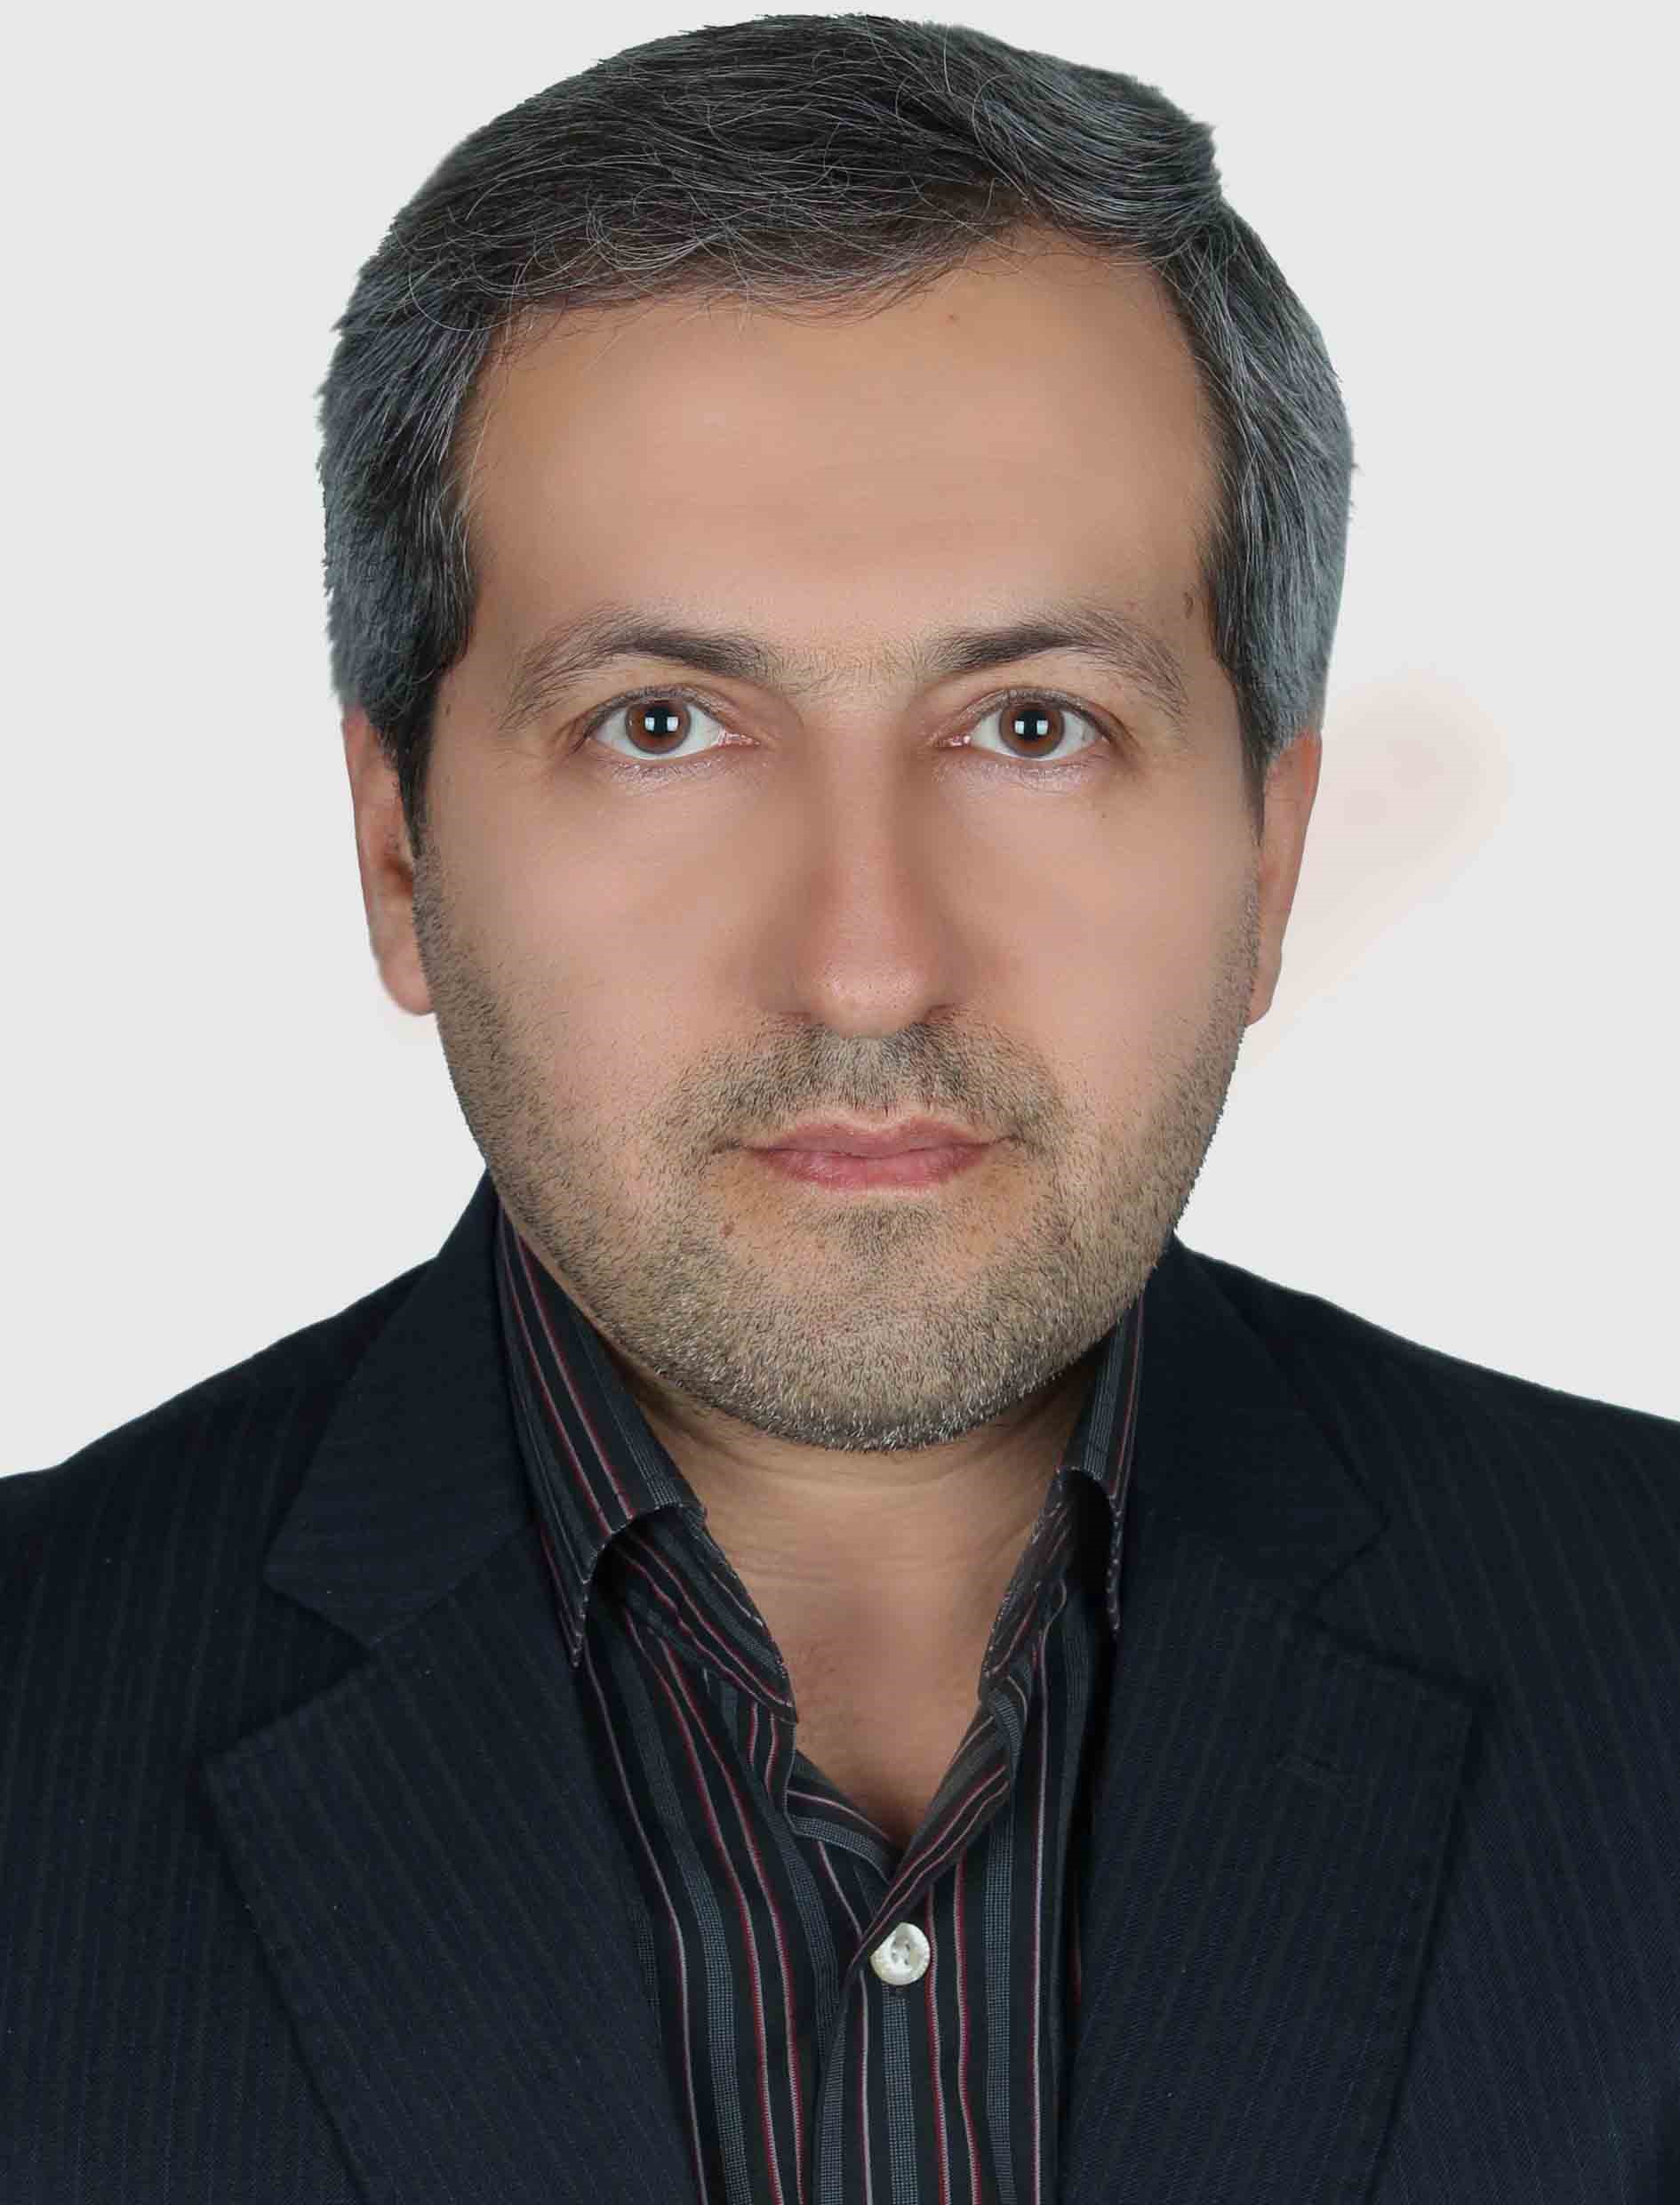 Mohammad Reza Sharifi